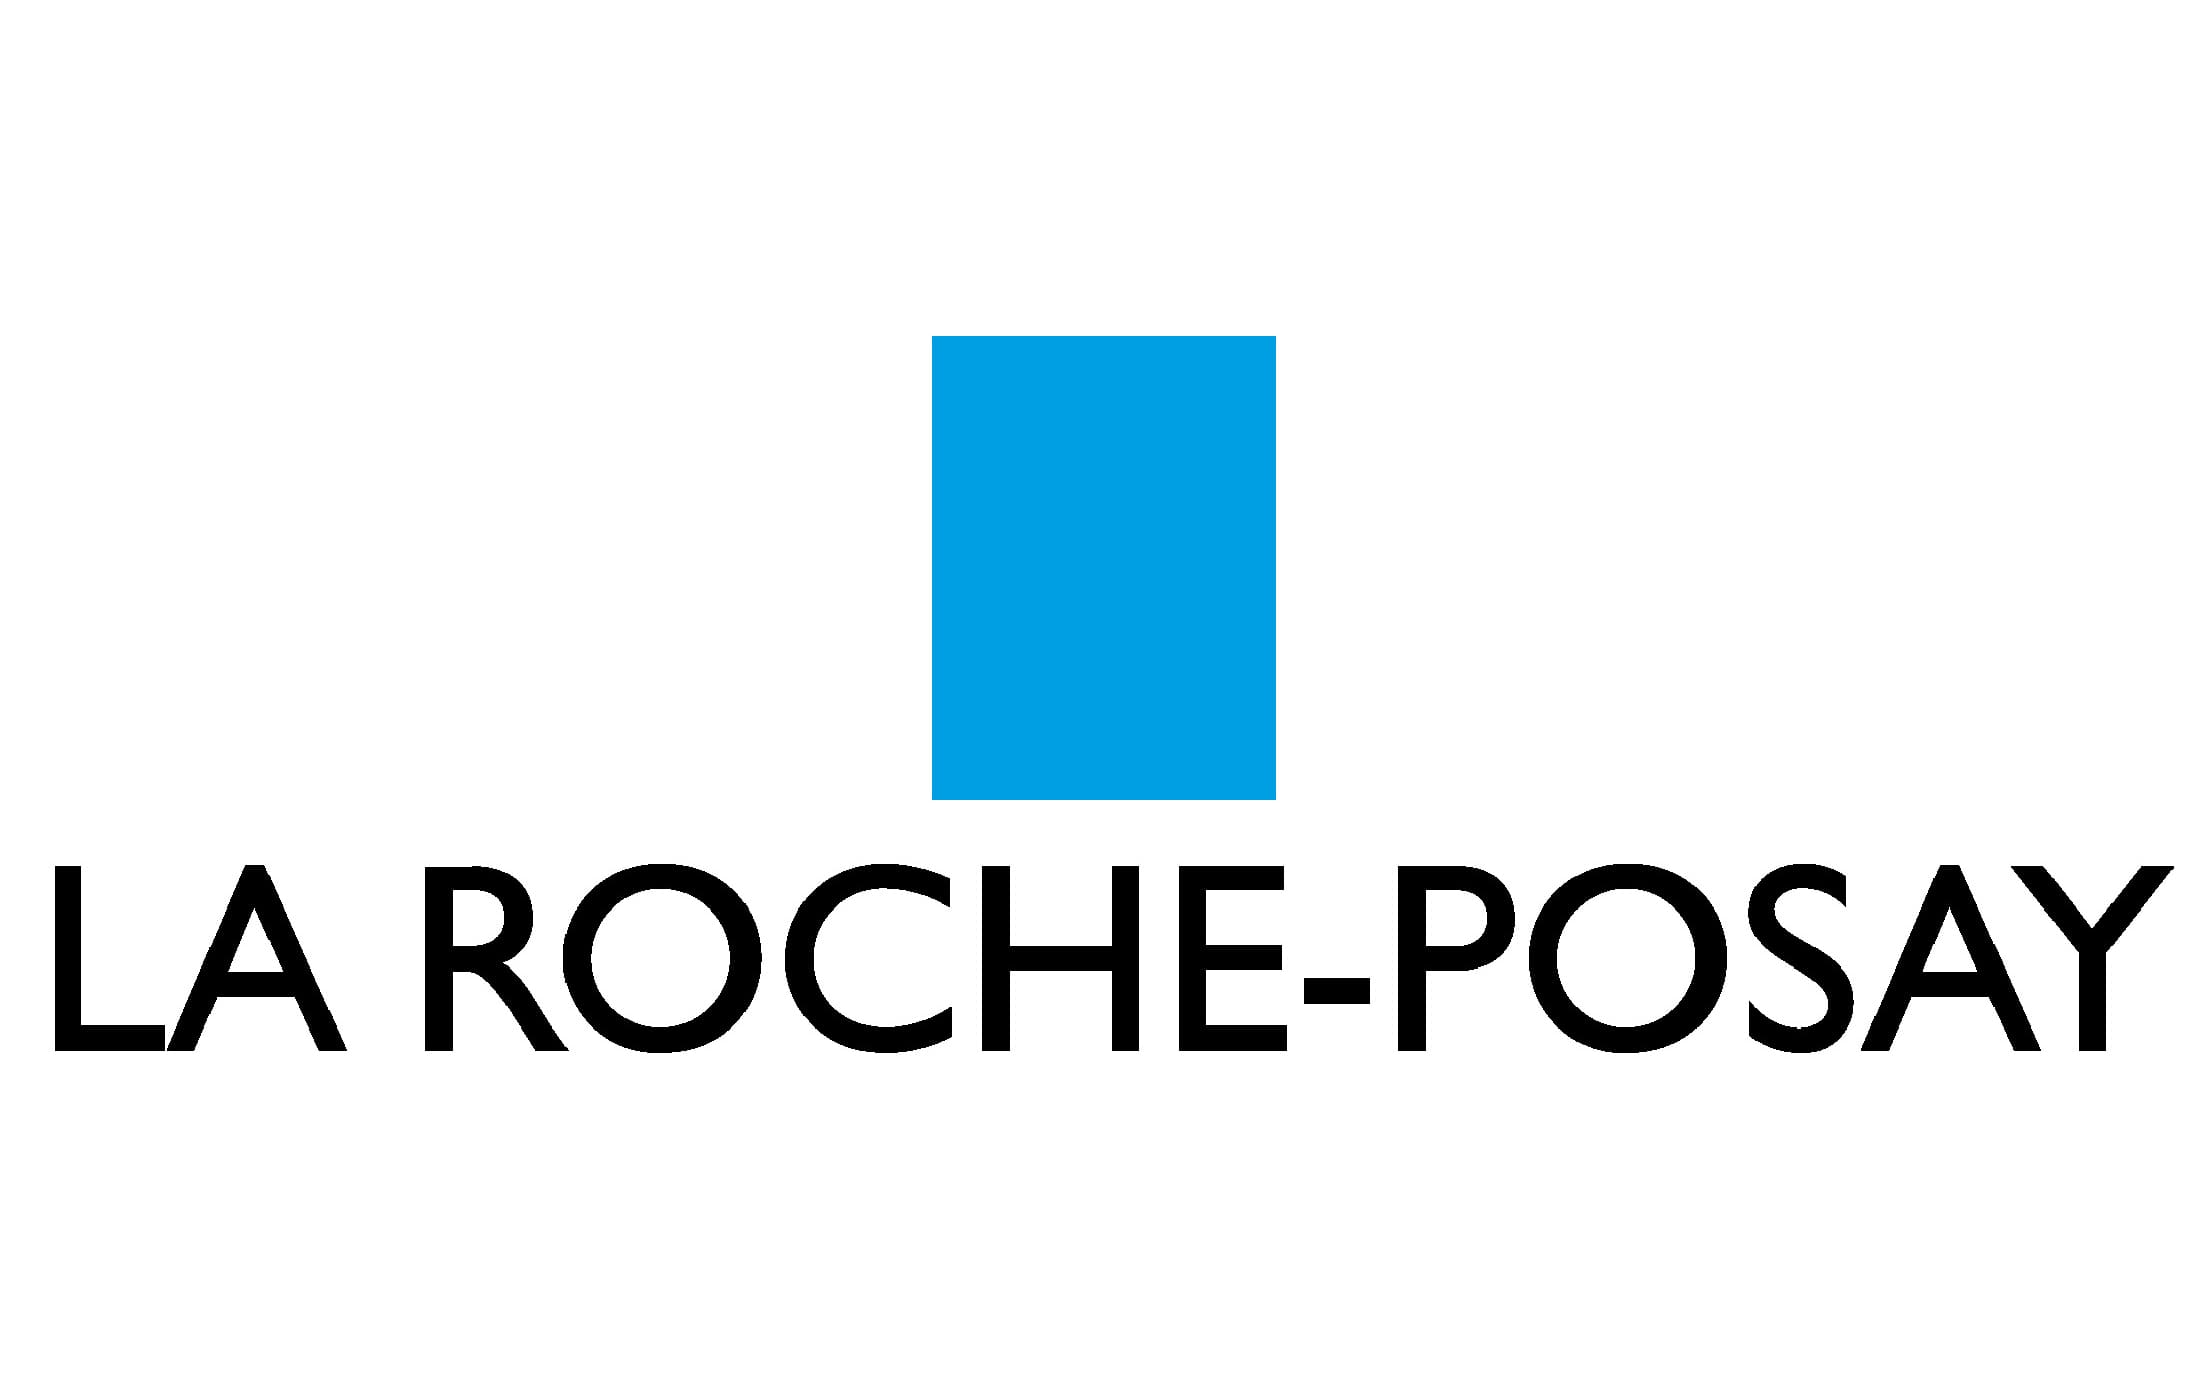 لاروش پوزای LA ROCHE -POSAY